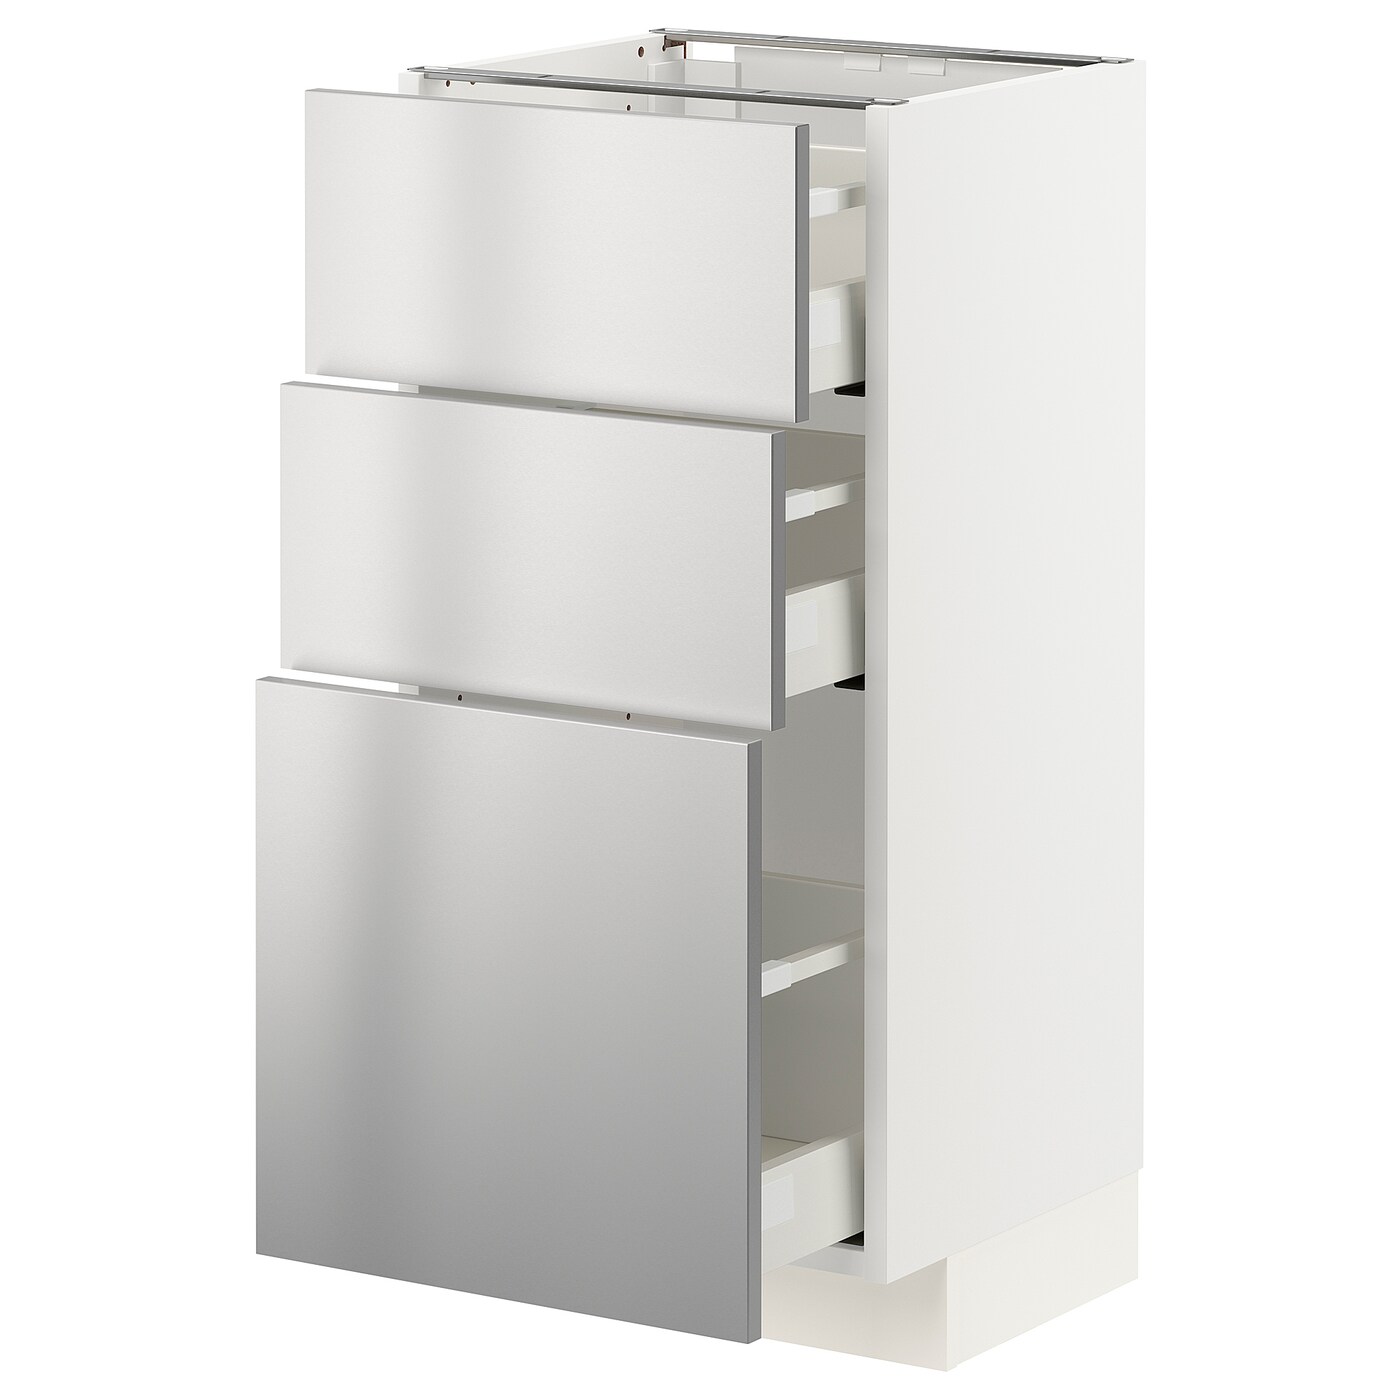 Напольный кухонный шкаф  - IKEA METOD MAXIMERA, 88x39x40см, белый/светло-серый, МЕТОД МАКСИМЕРА ИКЕА